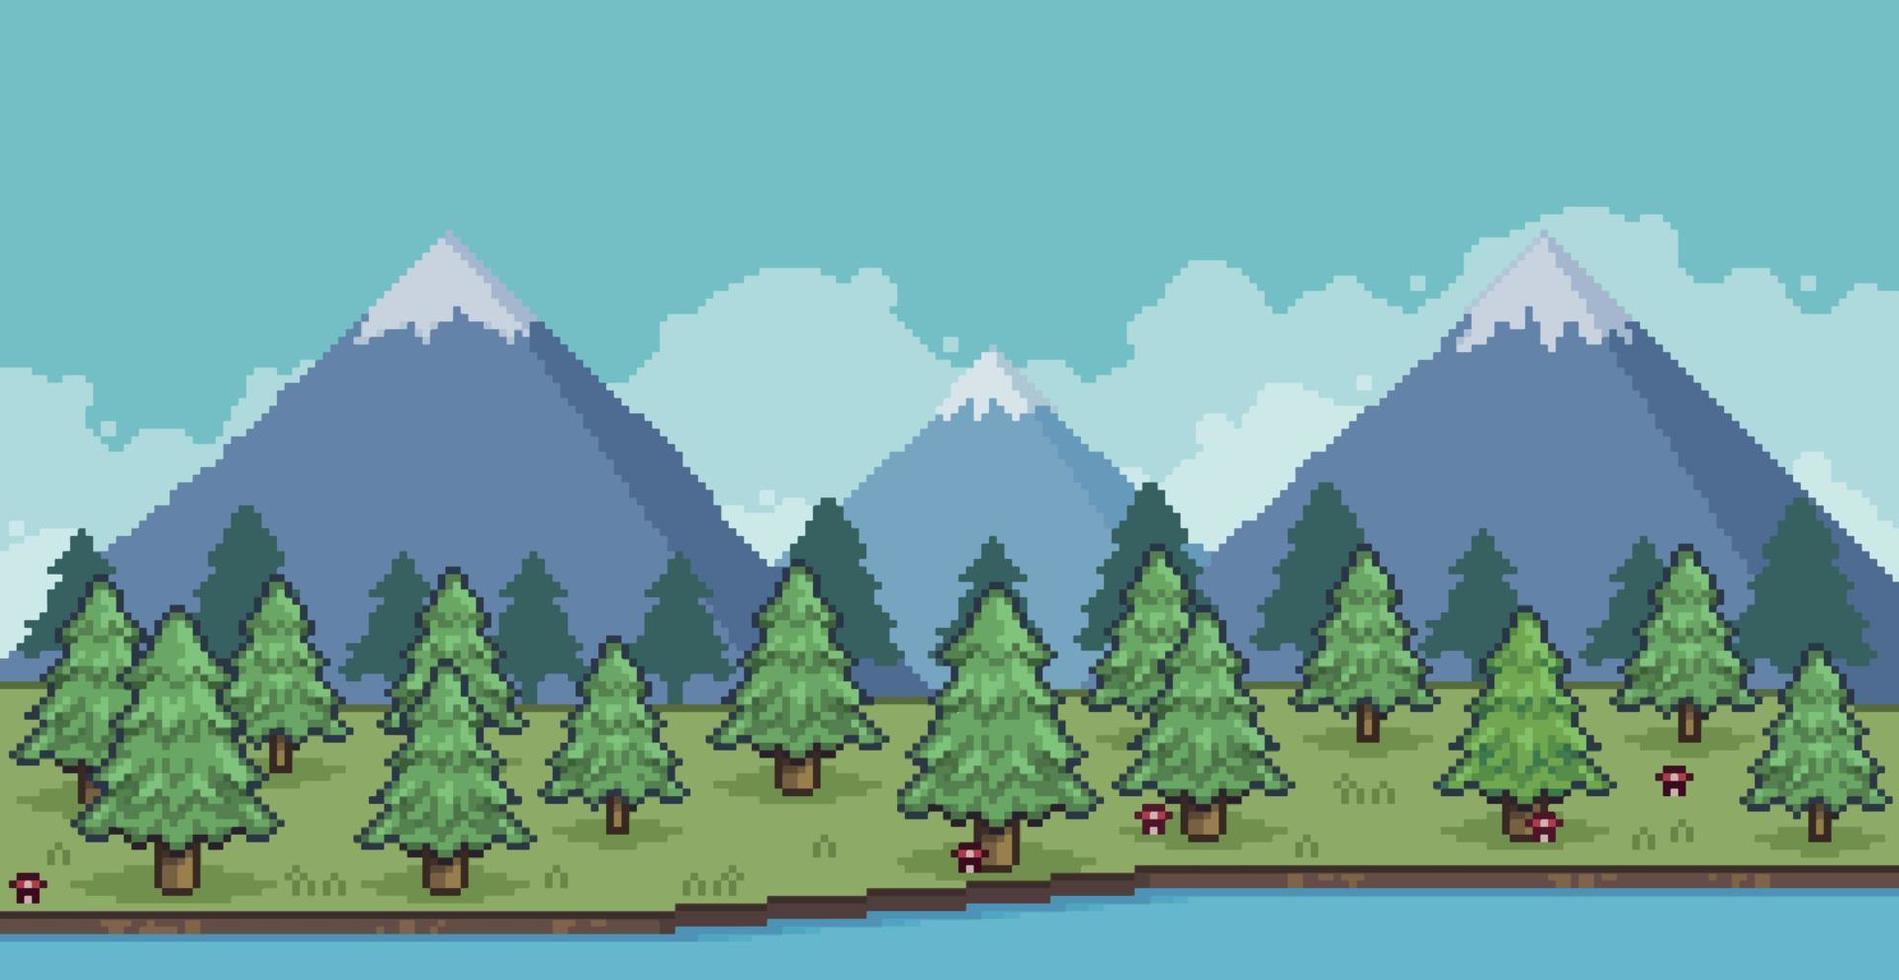 Pixelkunstlandschaft aus Kiefernwald in den Bergen mit See und Wolken 8-Bit-Spielhintergrund vektor